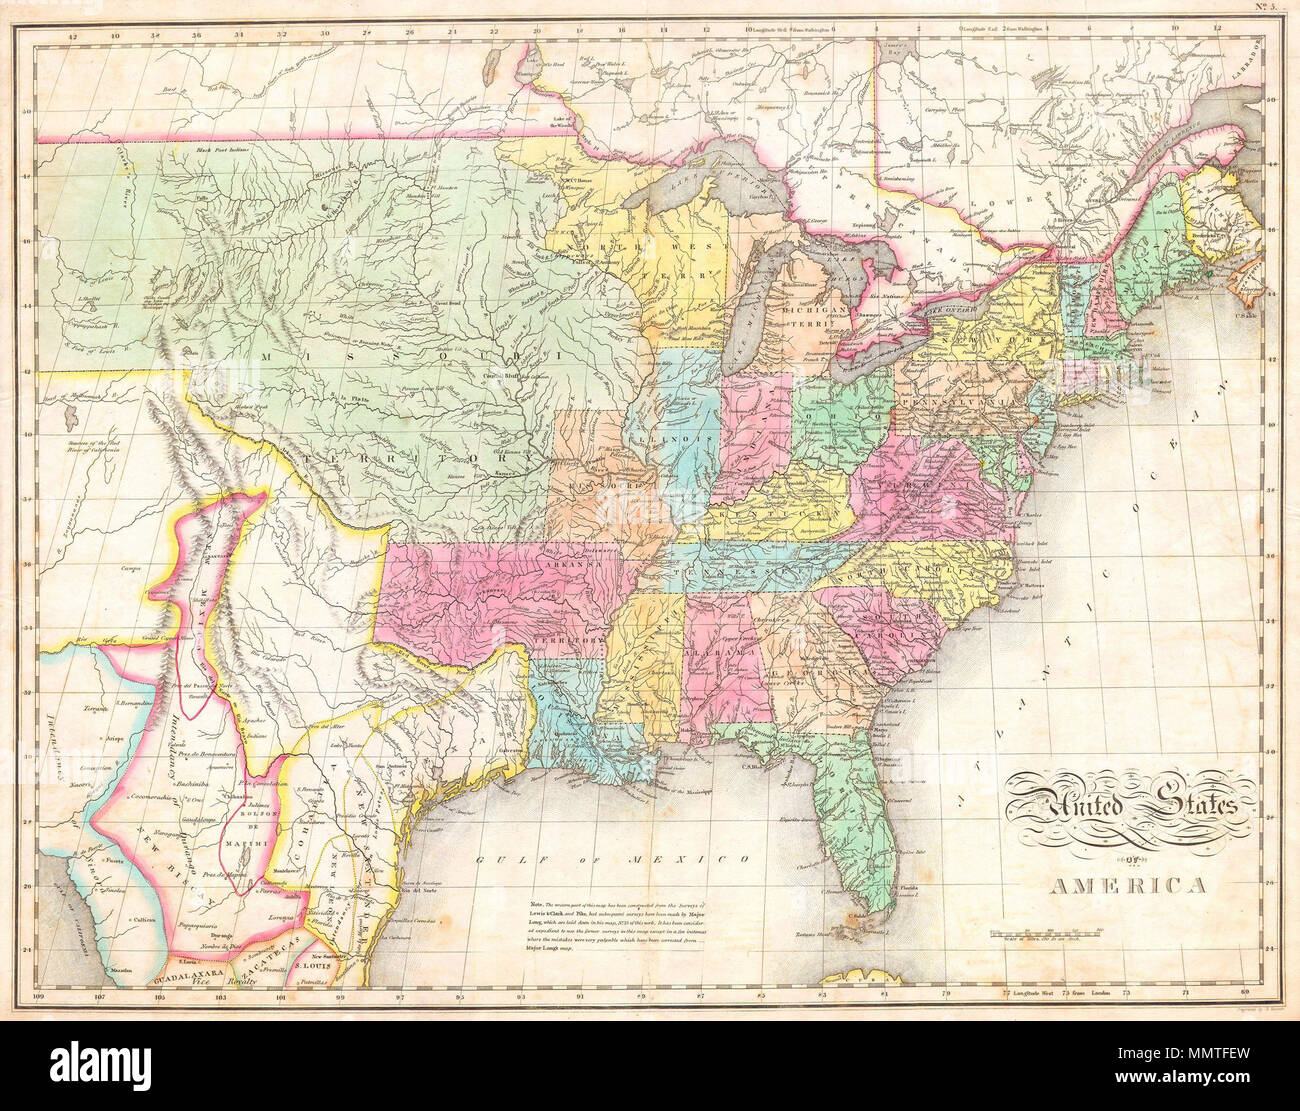 . Anglais : l'un des plus importants American cartes des États-Unis à apparaître au début du 19e siècle. Représente les États-Unis et le Mexique à peu près de l'Atlantique à la région juste à l'ouest des montagnes Rocheuses, y compris l'immense territoire du Missouri, du Texas et du Mexique. Cette carte a été produite par l'action conjointe de trois importants cartographes américains : John Melish, Benjamin Tanner, et Mathew Cary. Il tire son origine dans le format de poche 1812 Melish carte des États-Unis. Au cours des quinze dernières années, le site serait mis à jour, révisé et amélioré pour divers reiss Banque D'Images